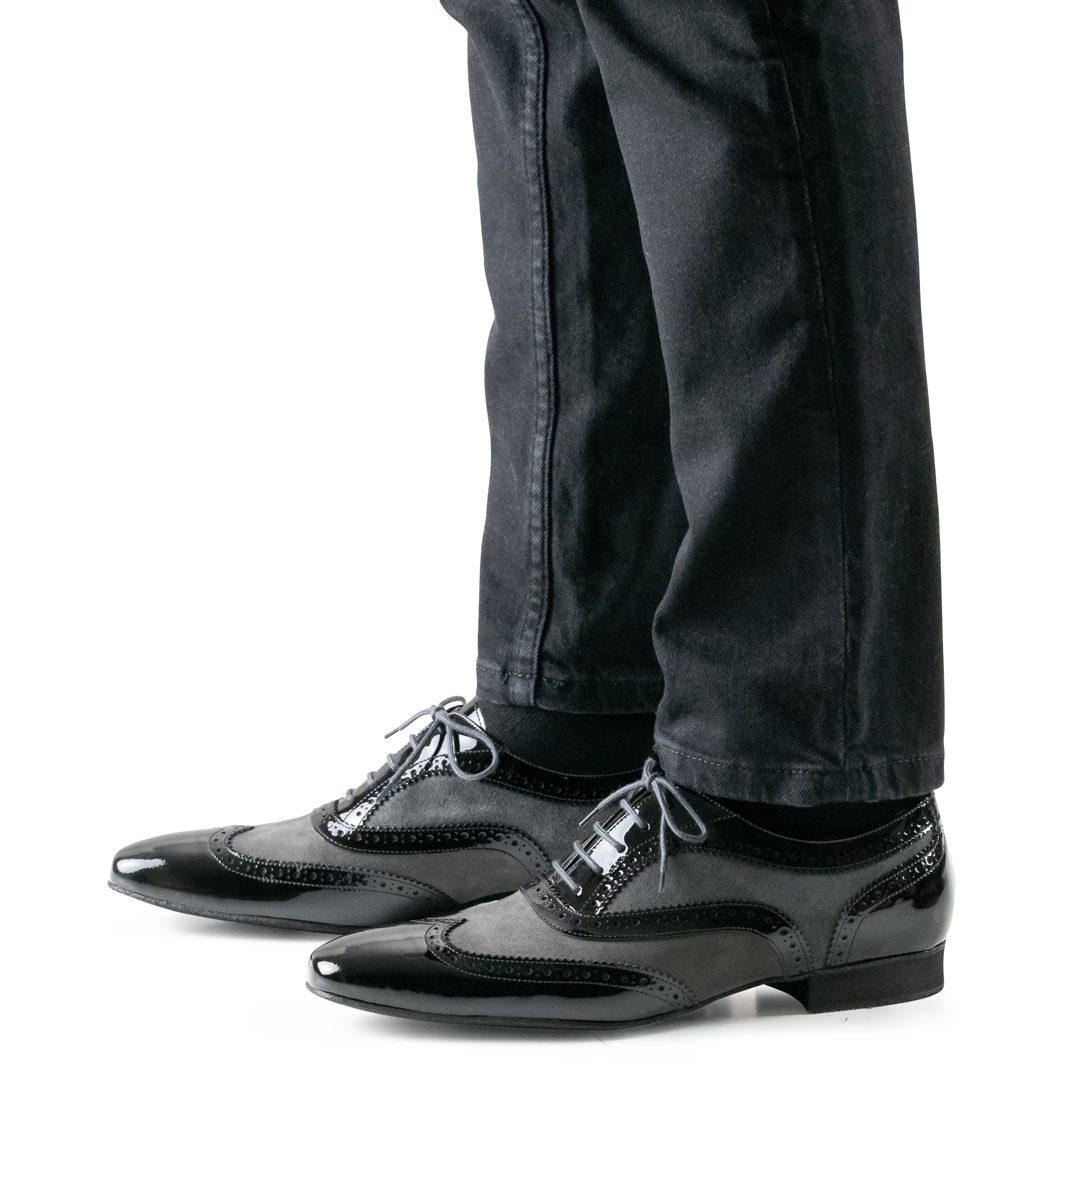 Chaussures de danse pour hommes de Nueva Epoca en velours et vernis en combinaison avec un pantalon noir